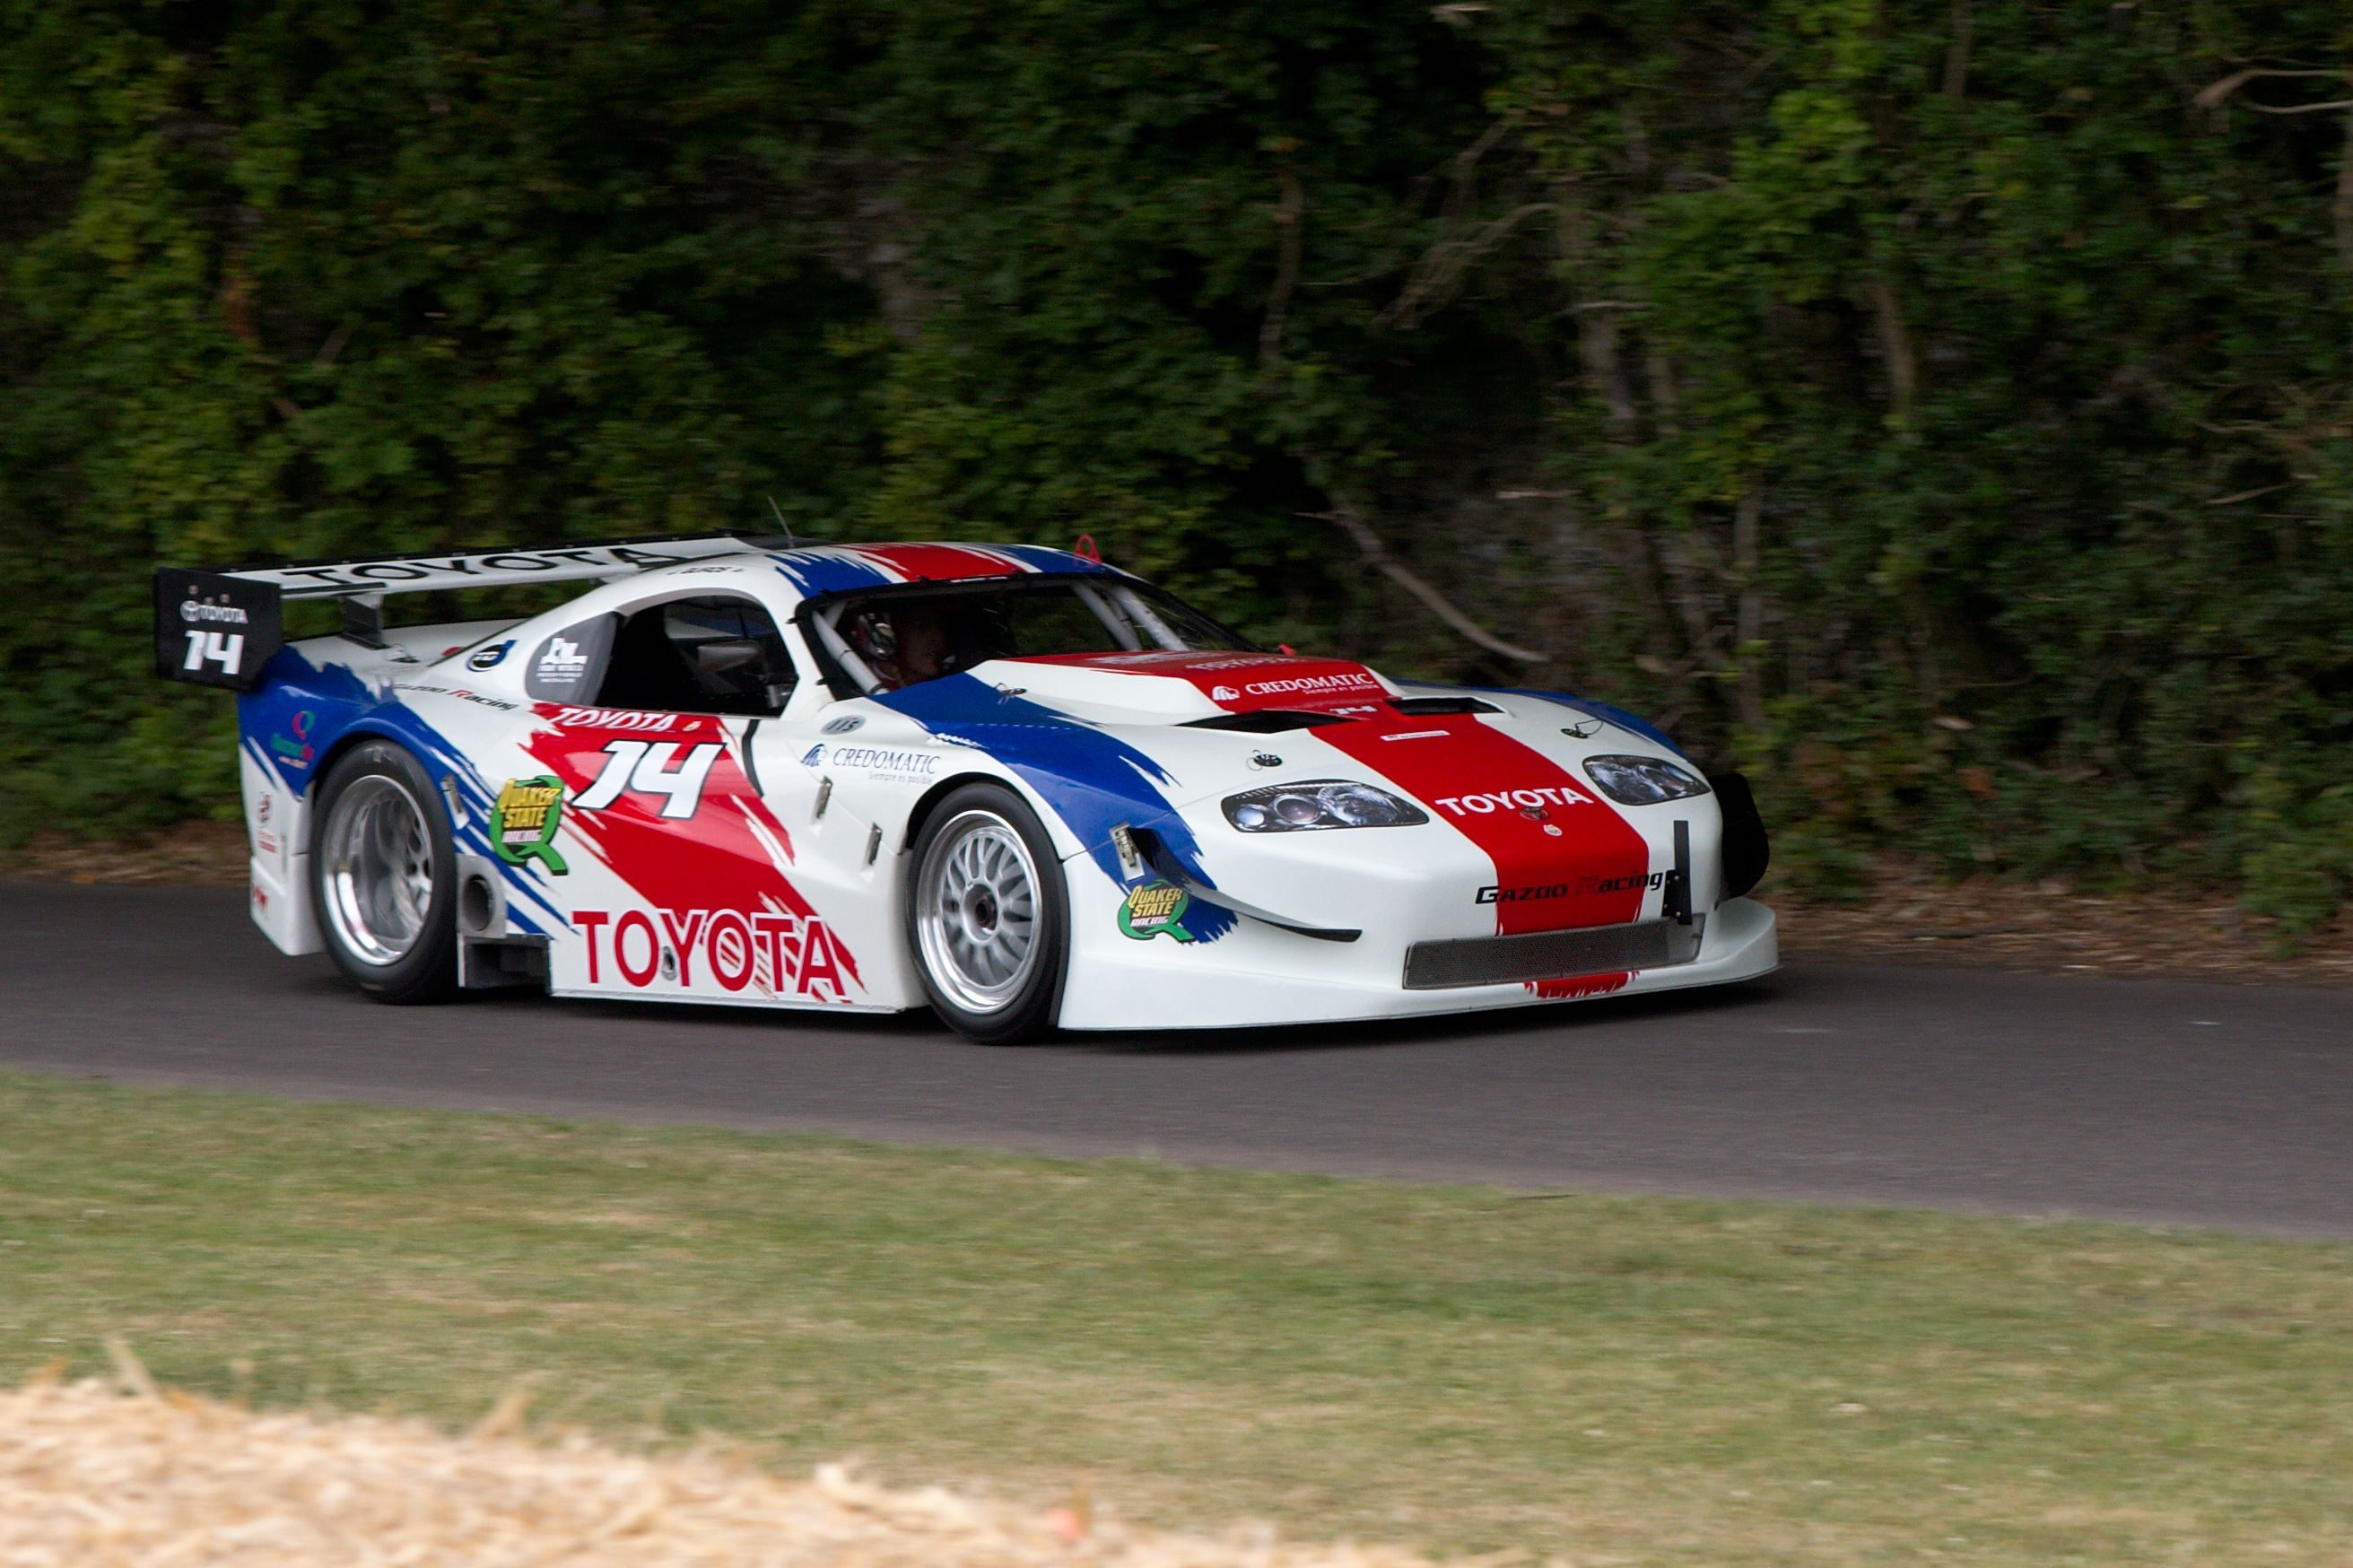 Gazoo_Racing_Toyota_Supra_-_Flickr_-_andrewbasterfield.jpg